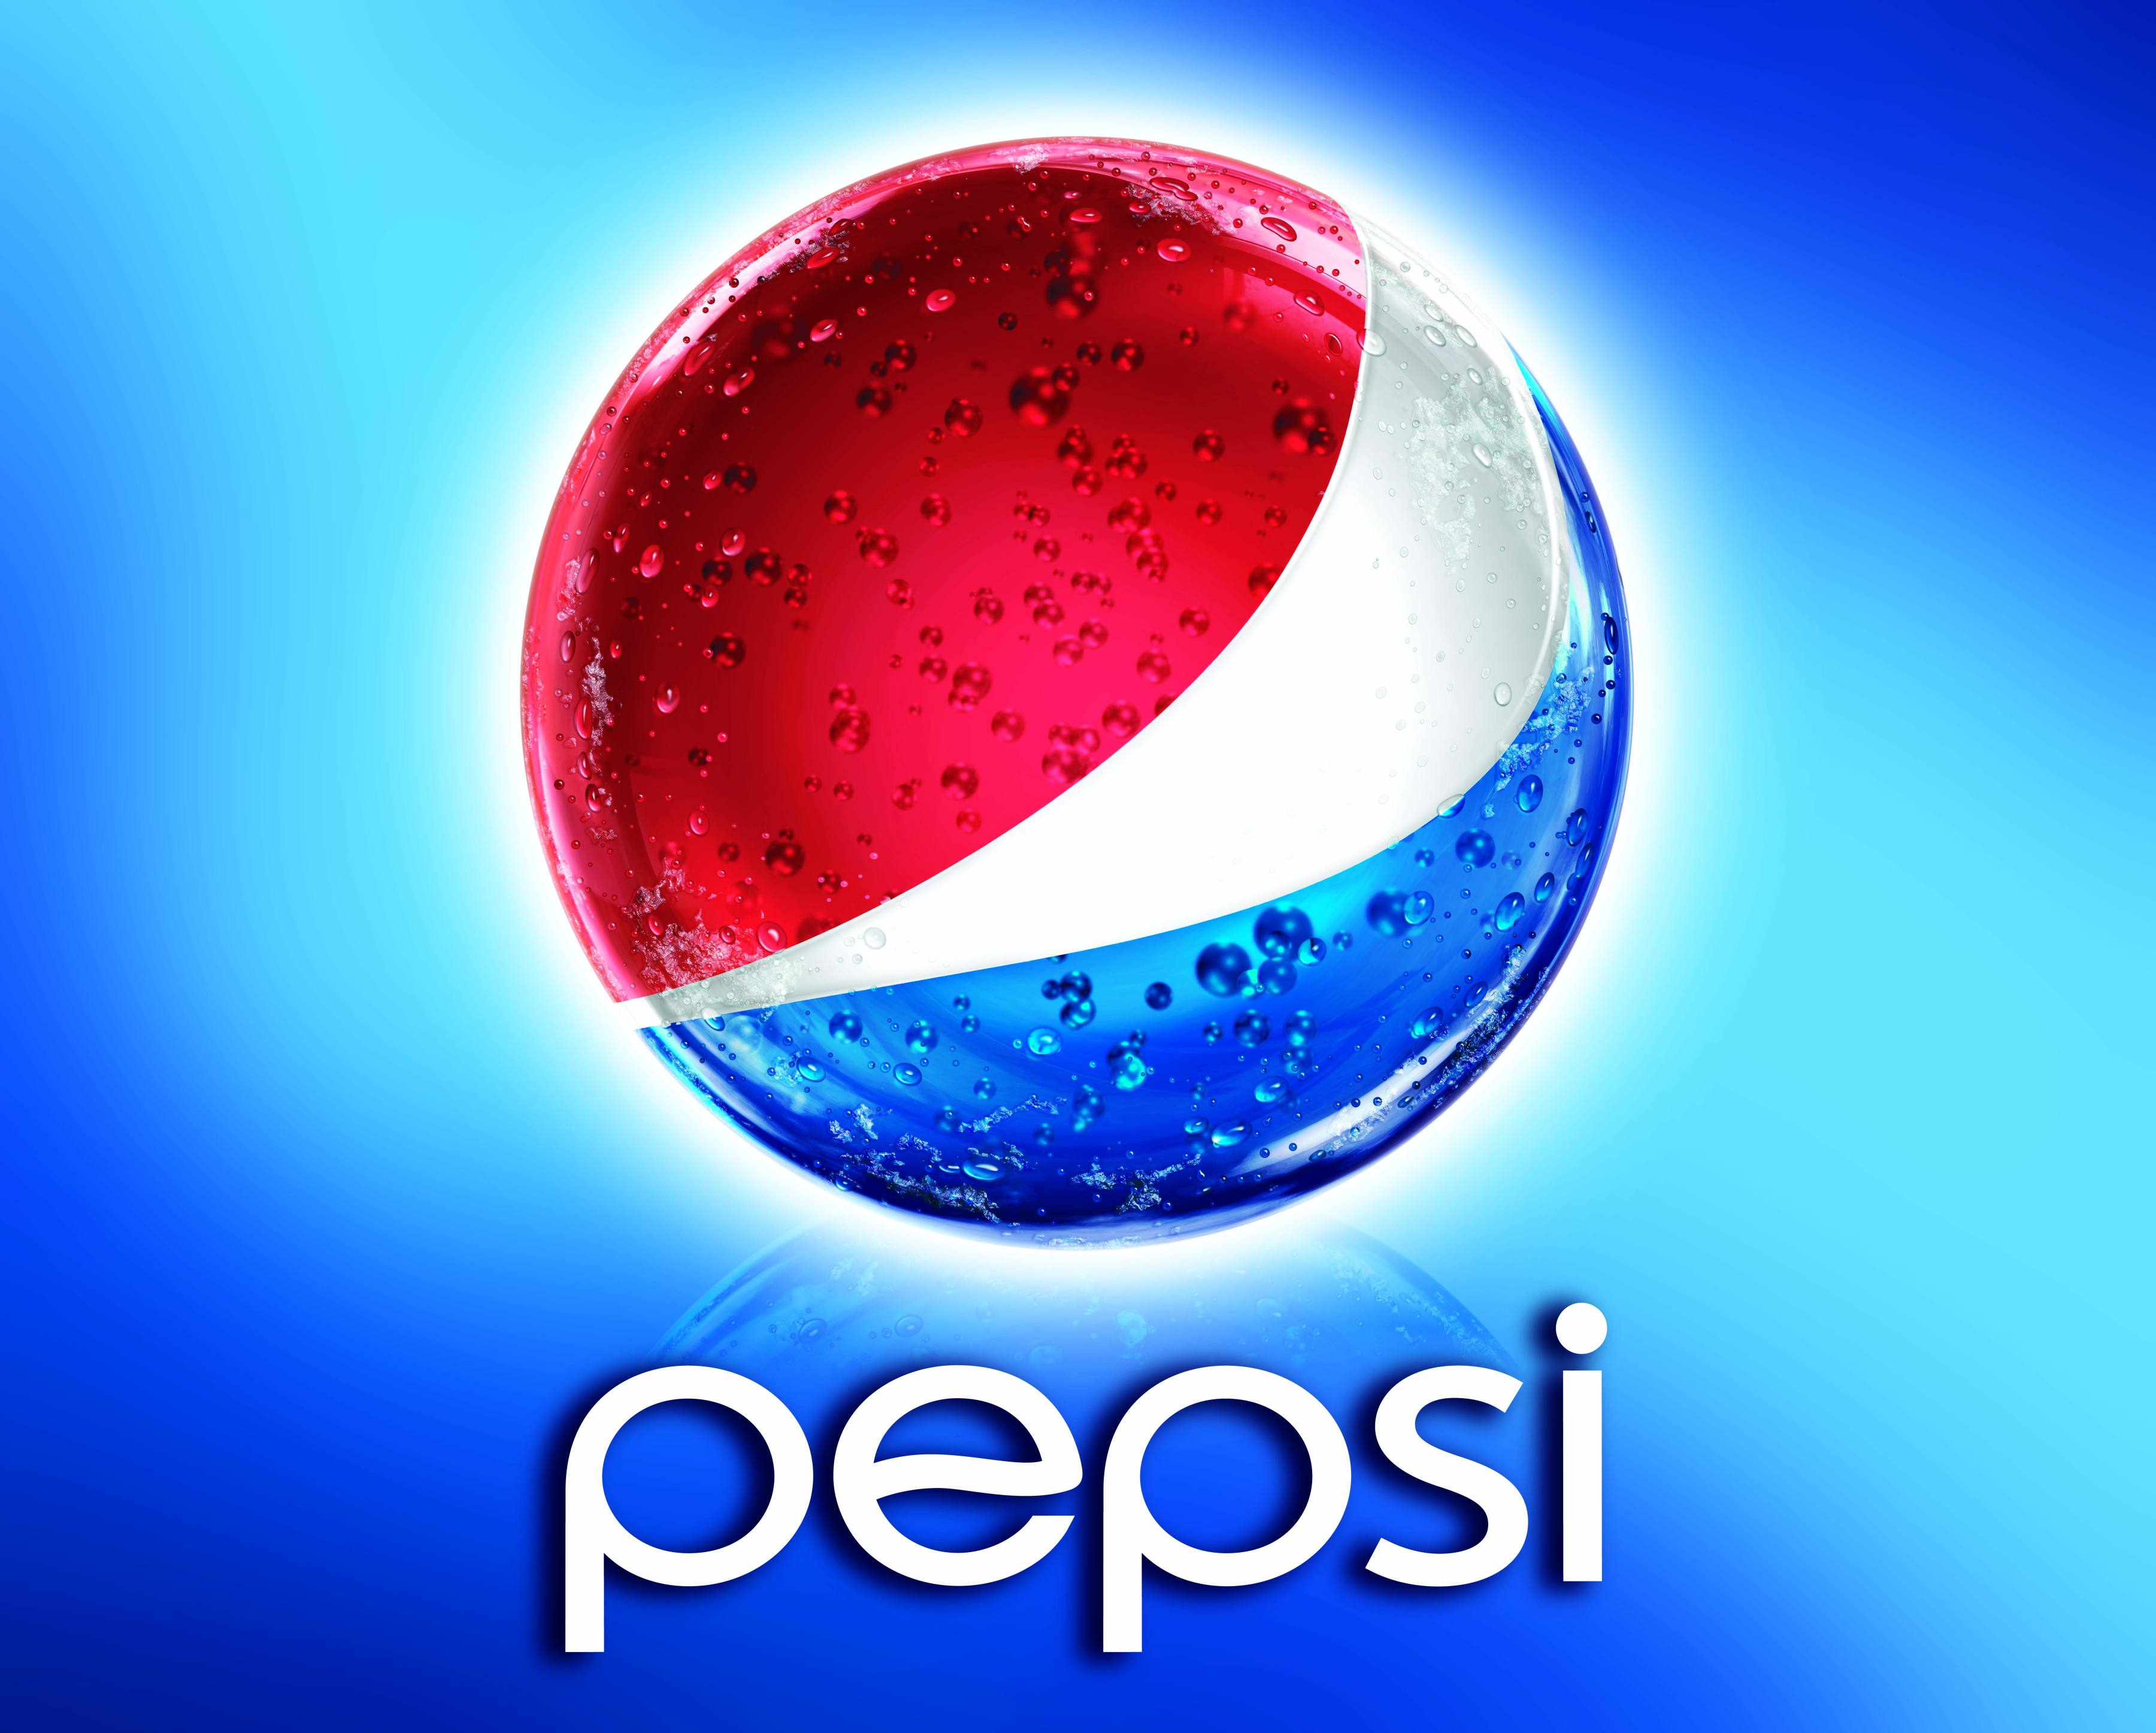 Pepsi - wallpaper.